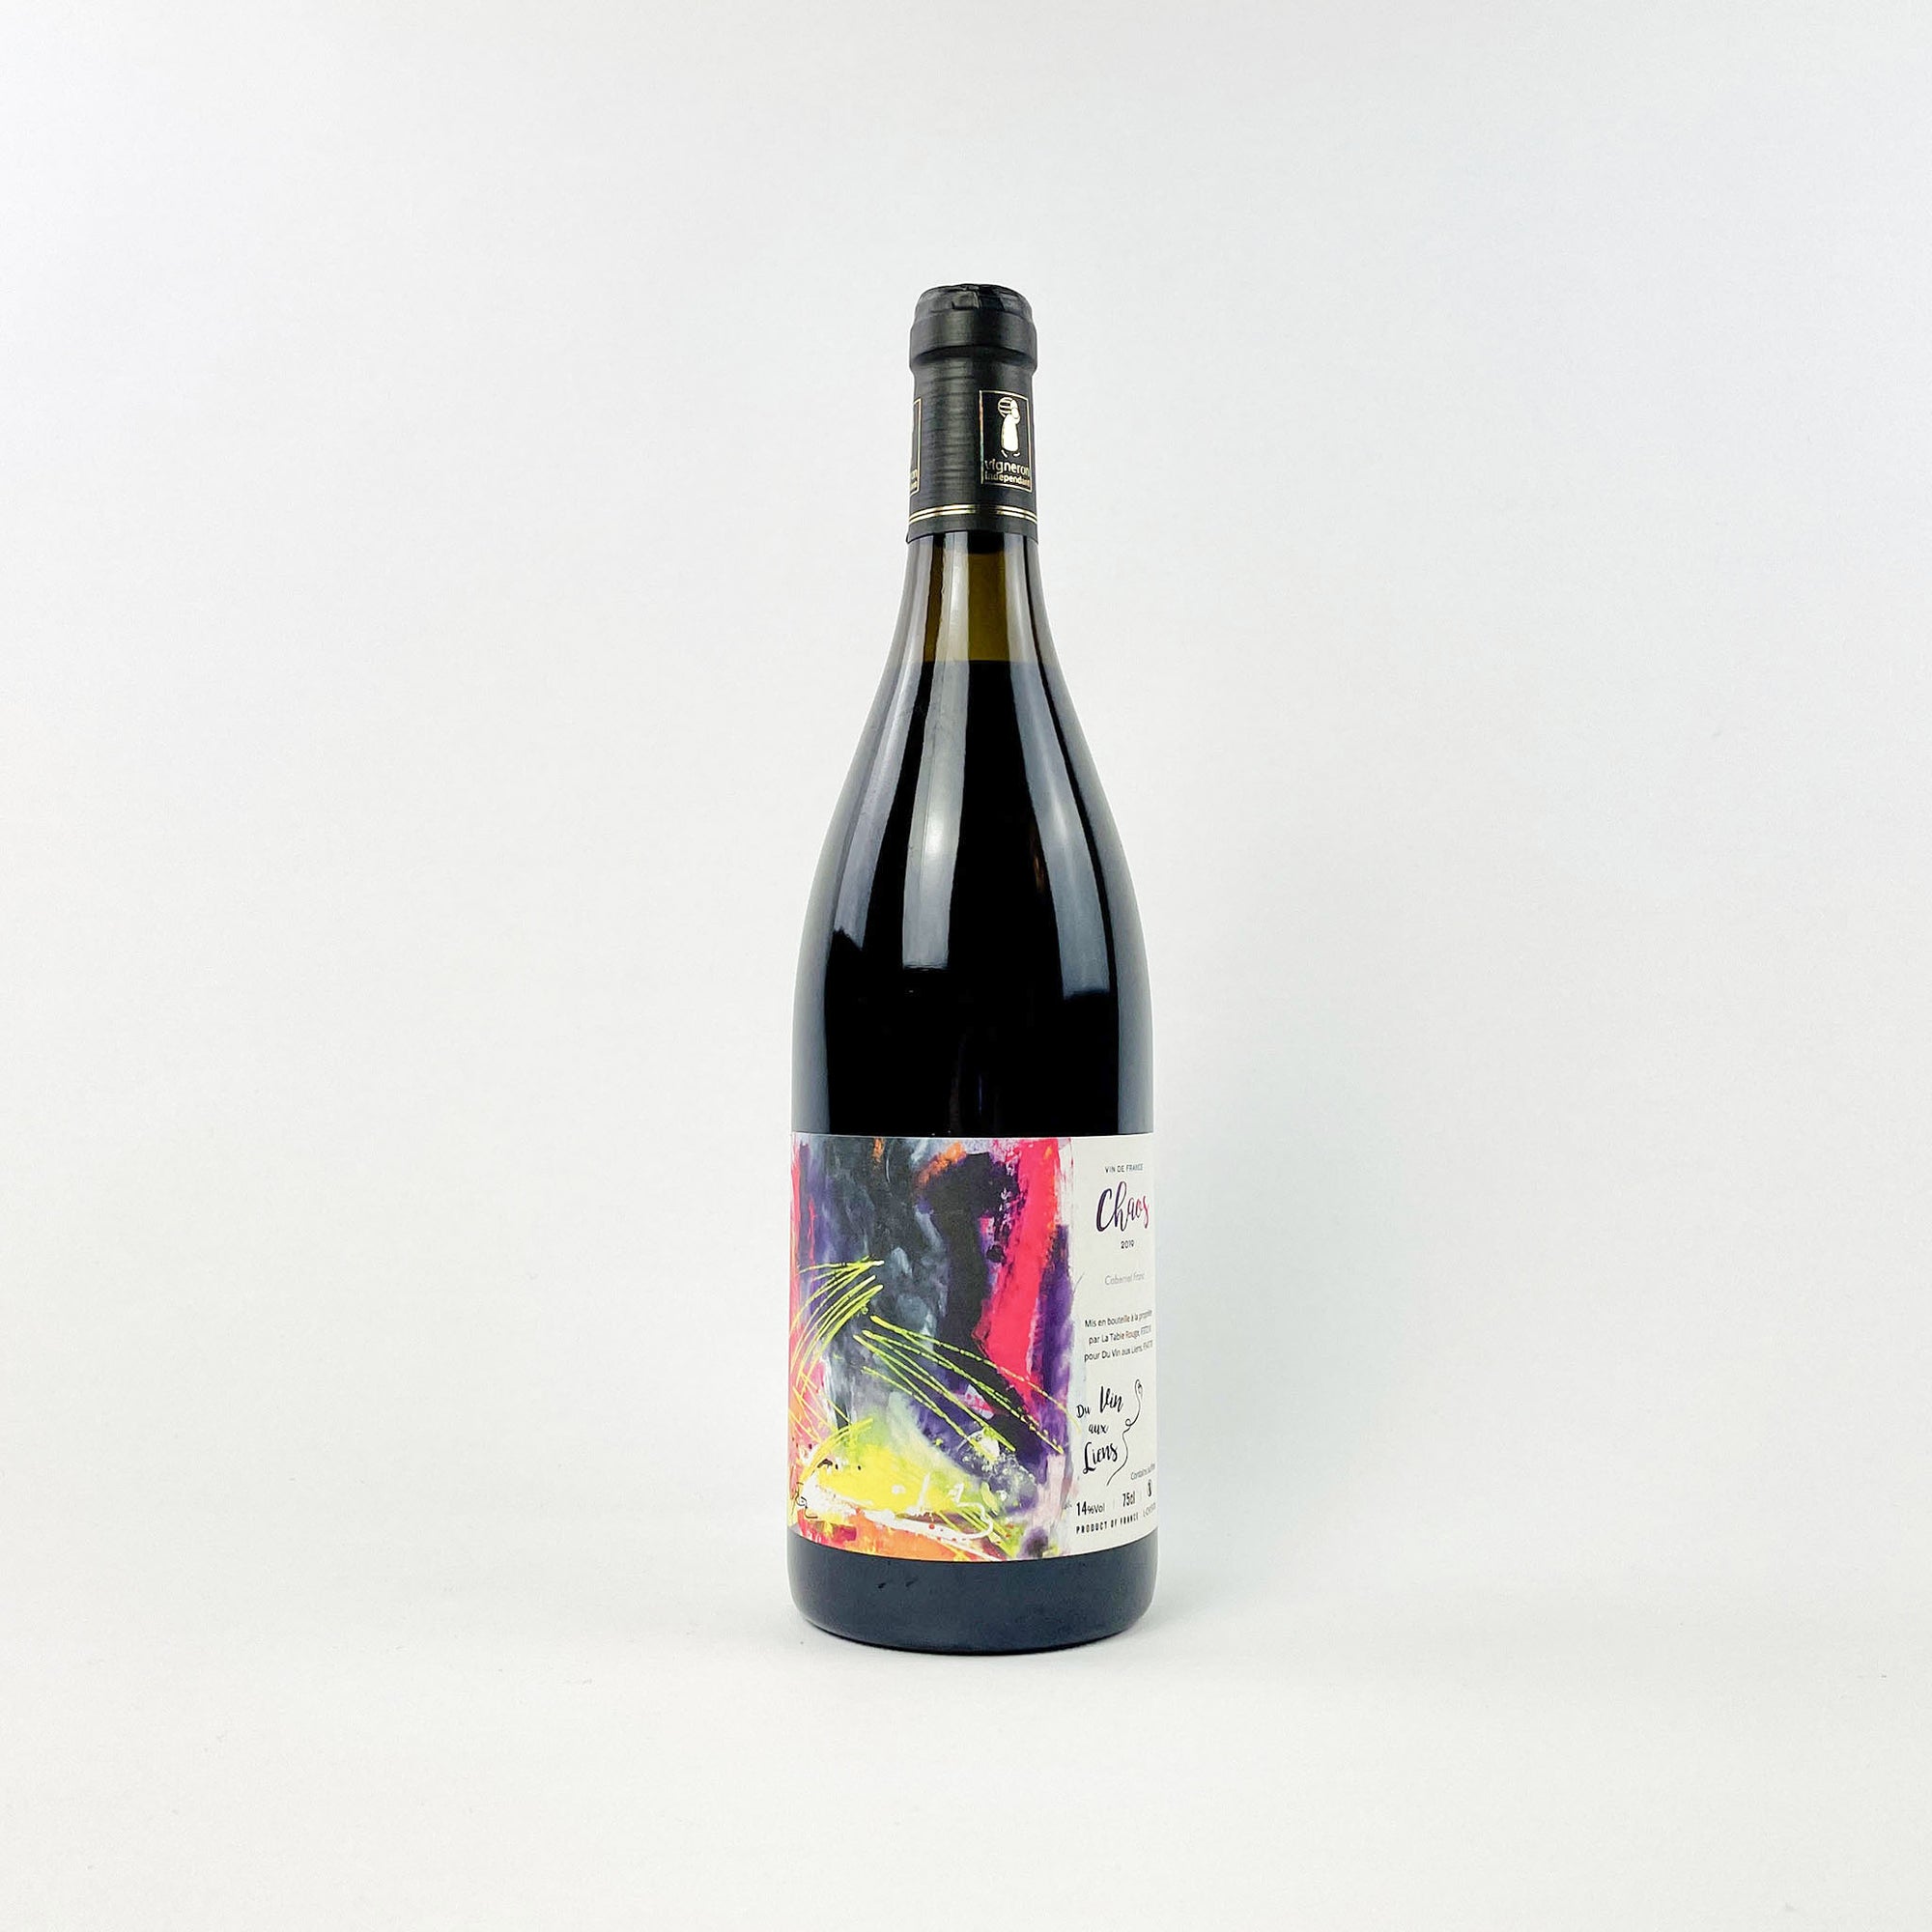 A bottle of Chaos Du Vin Aux Liens Natural Red Wine